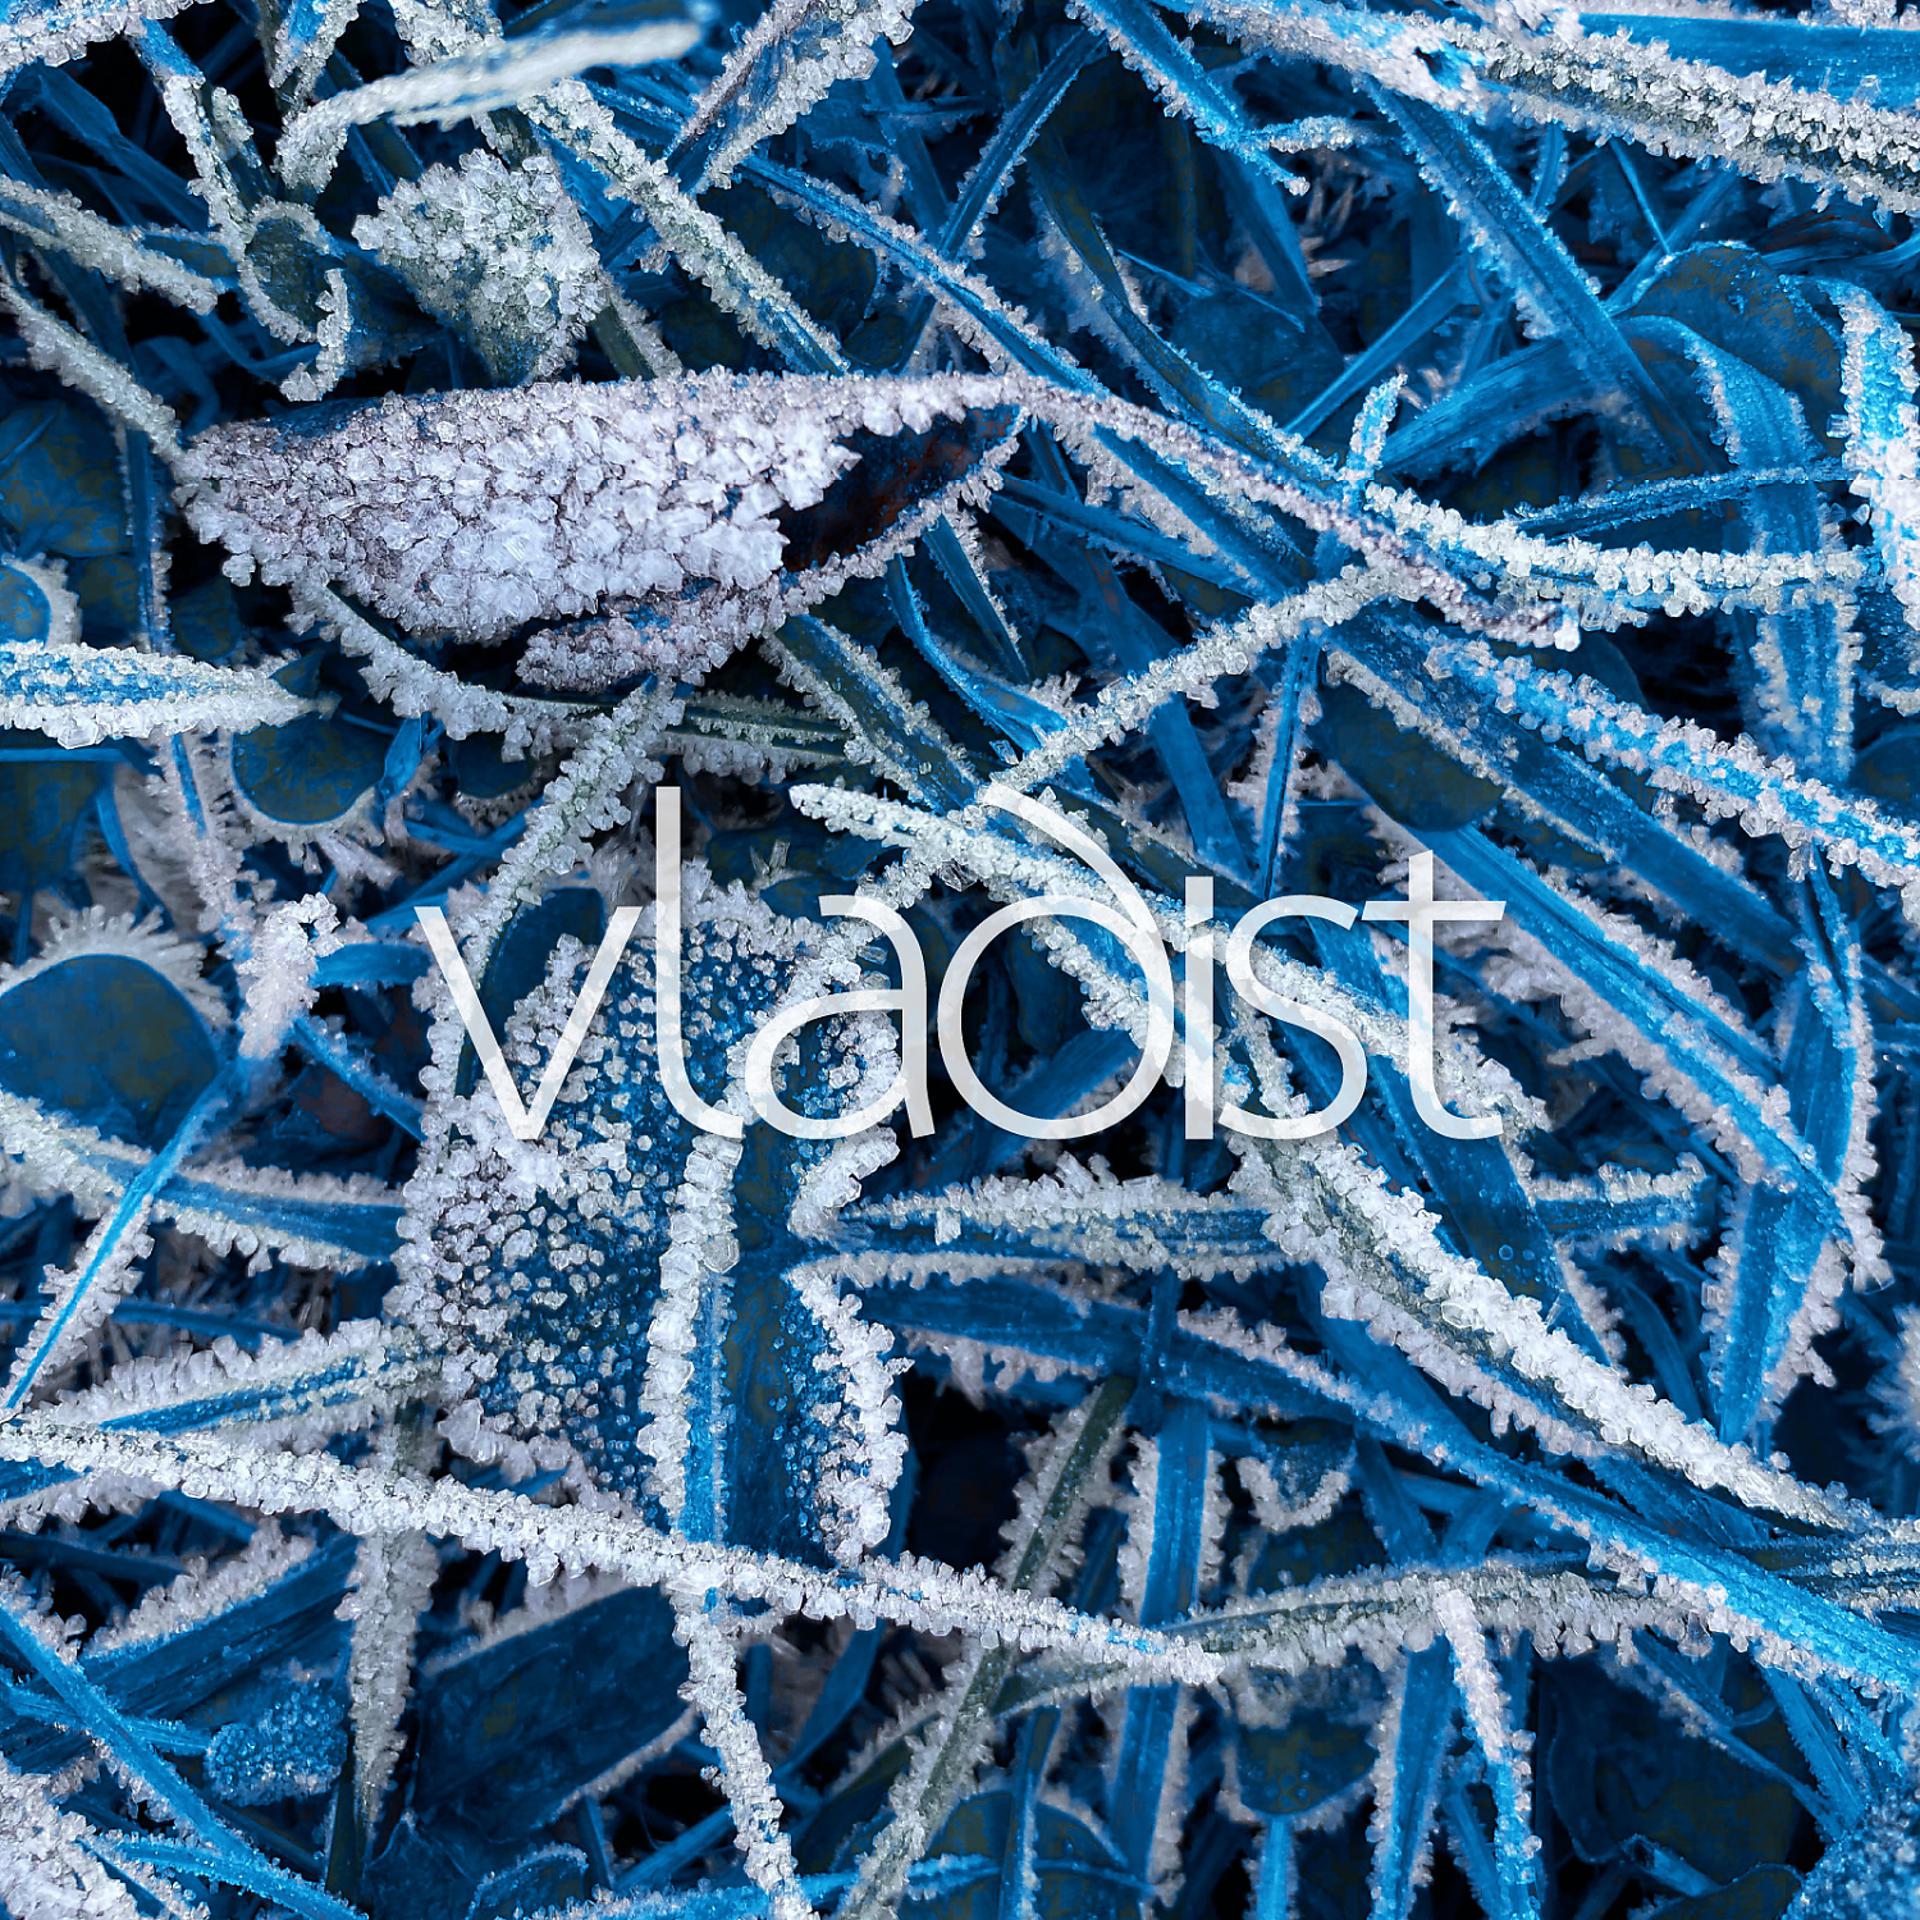 Постер альбома Frostbite